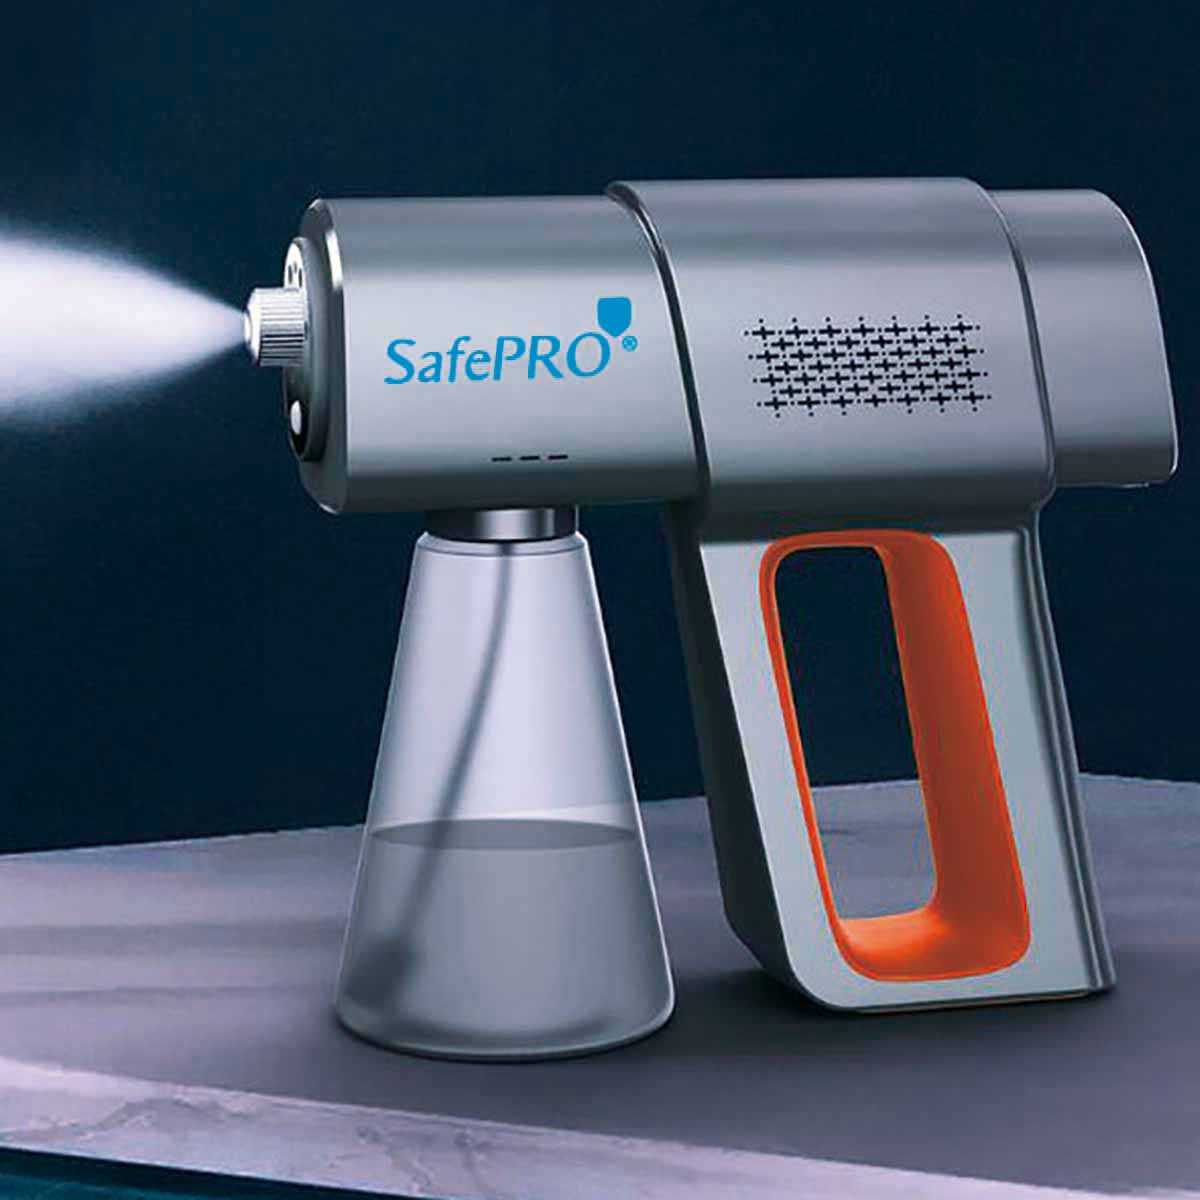 SafePRO® 納米多用途噴霧機